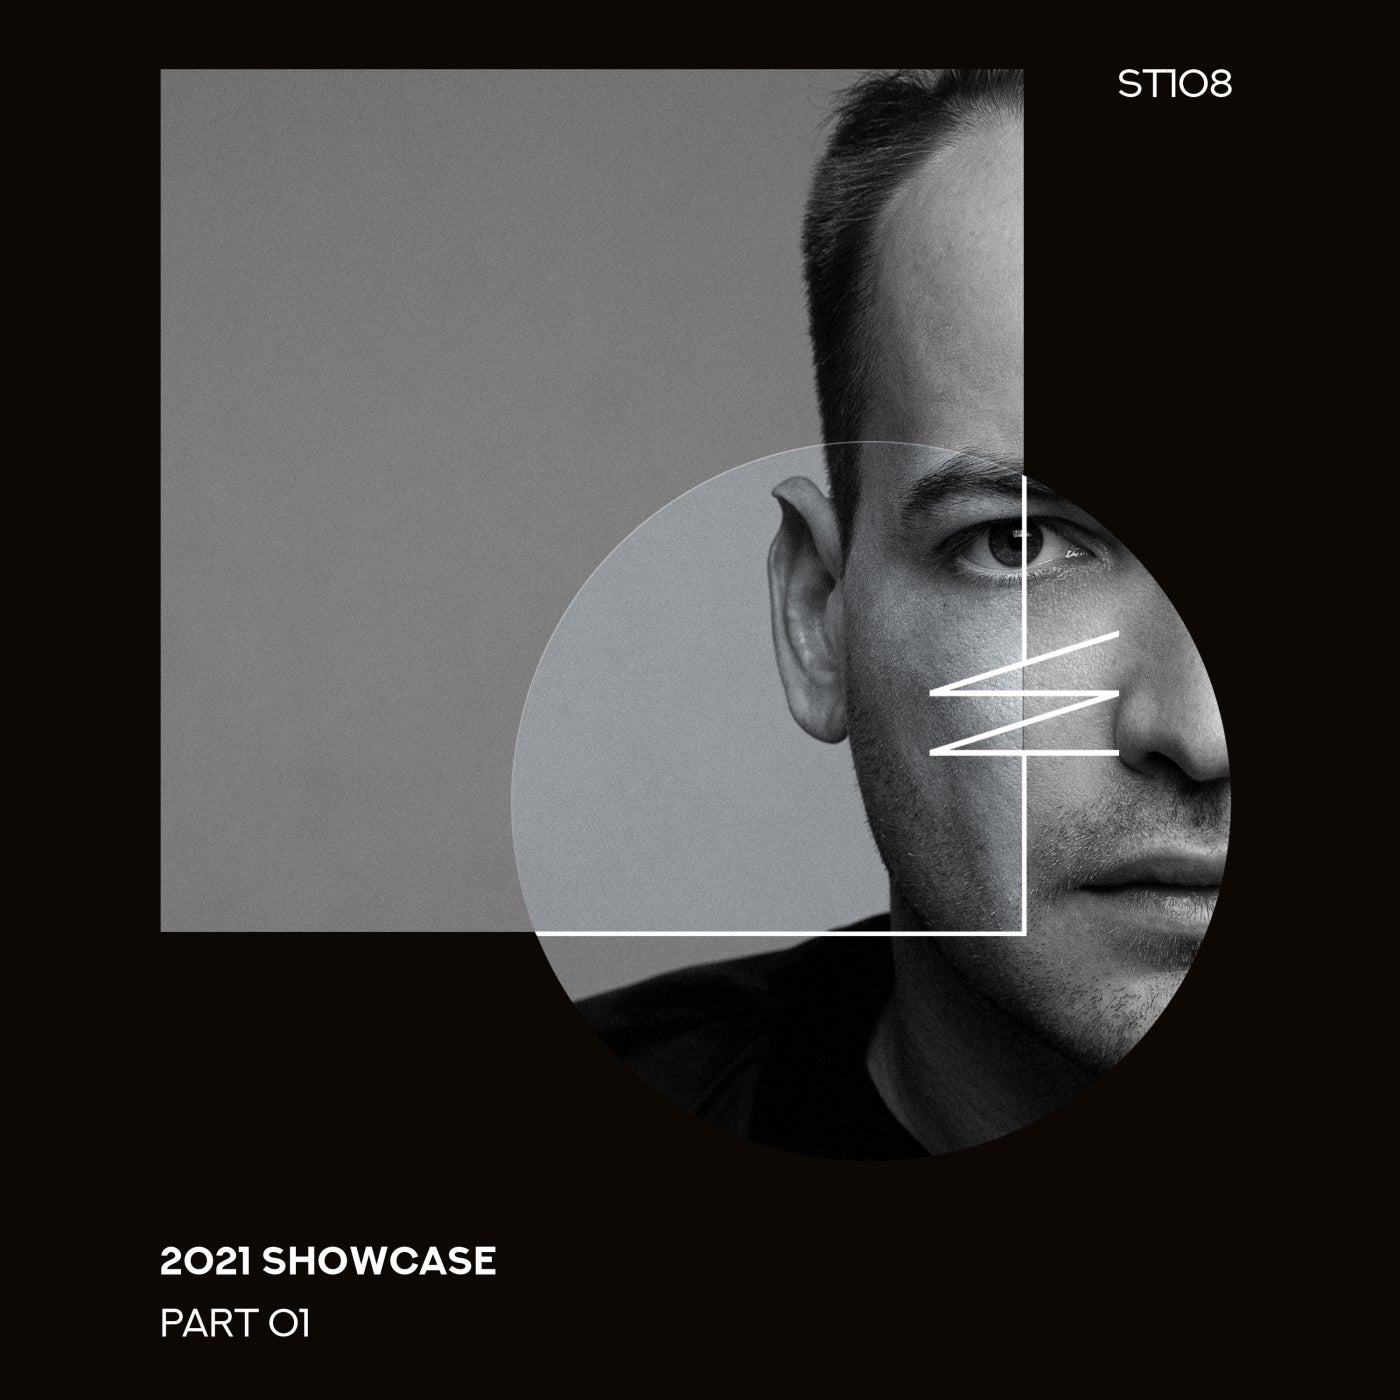 2021 Showcase, Pt. 1